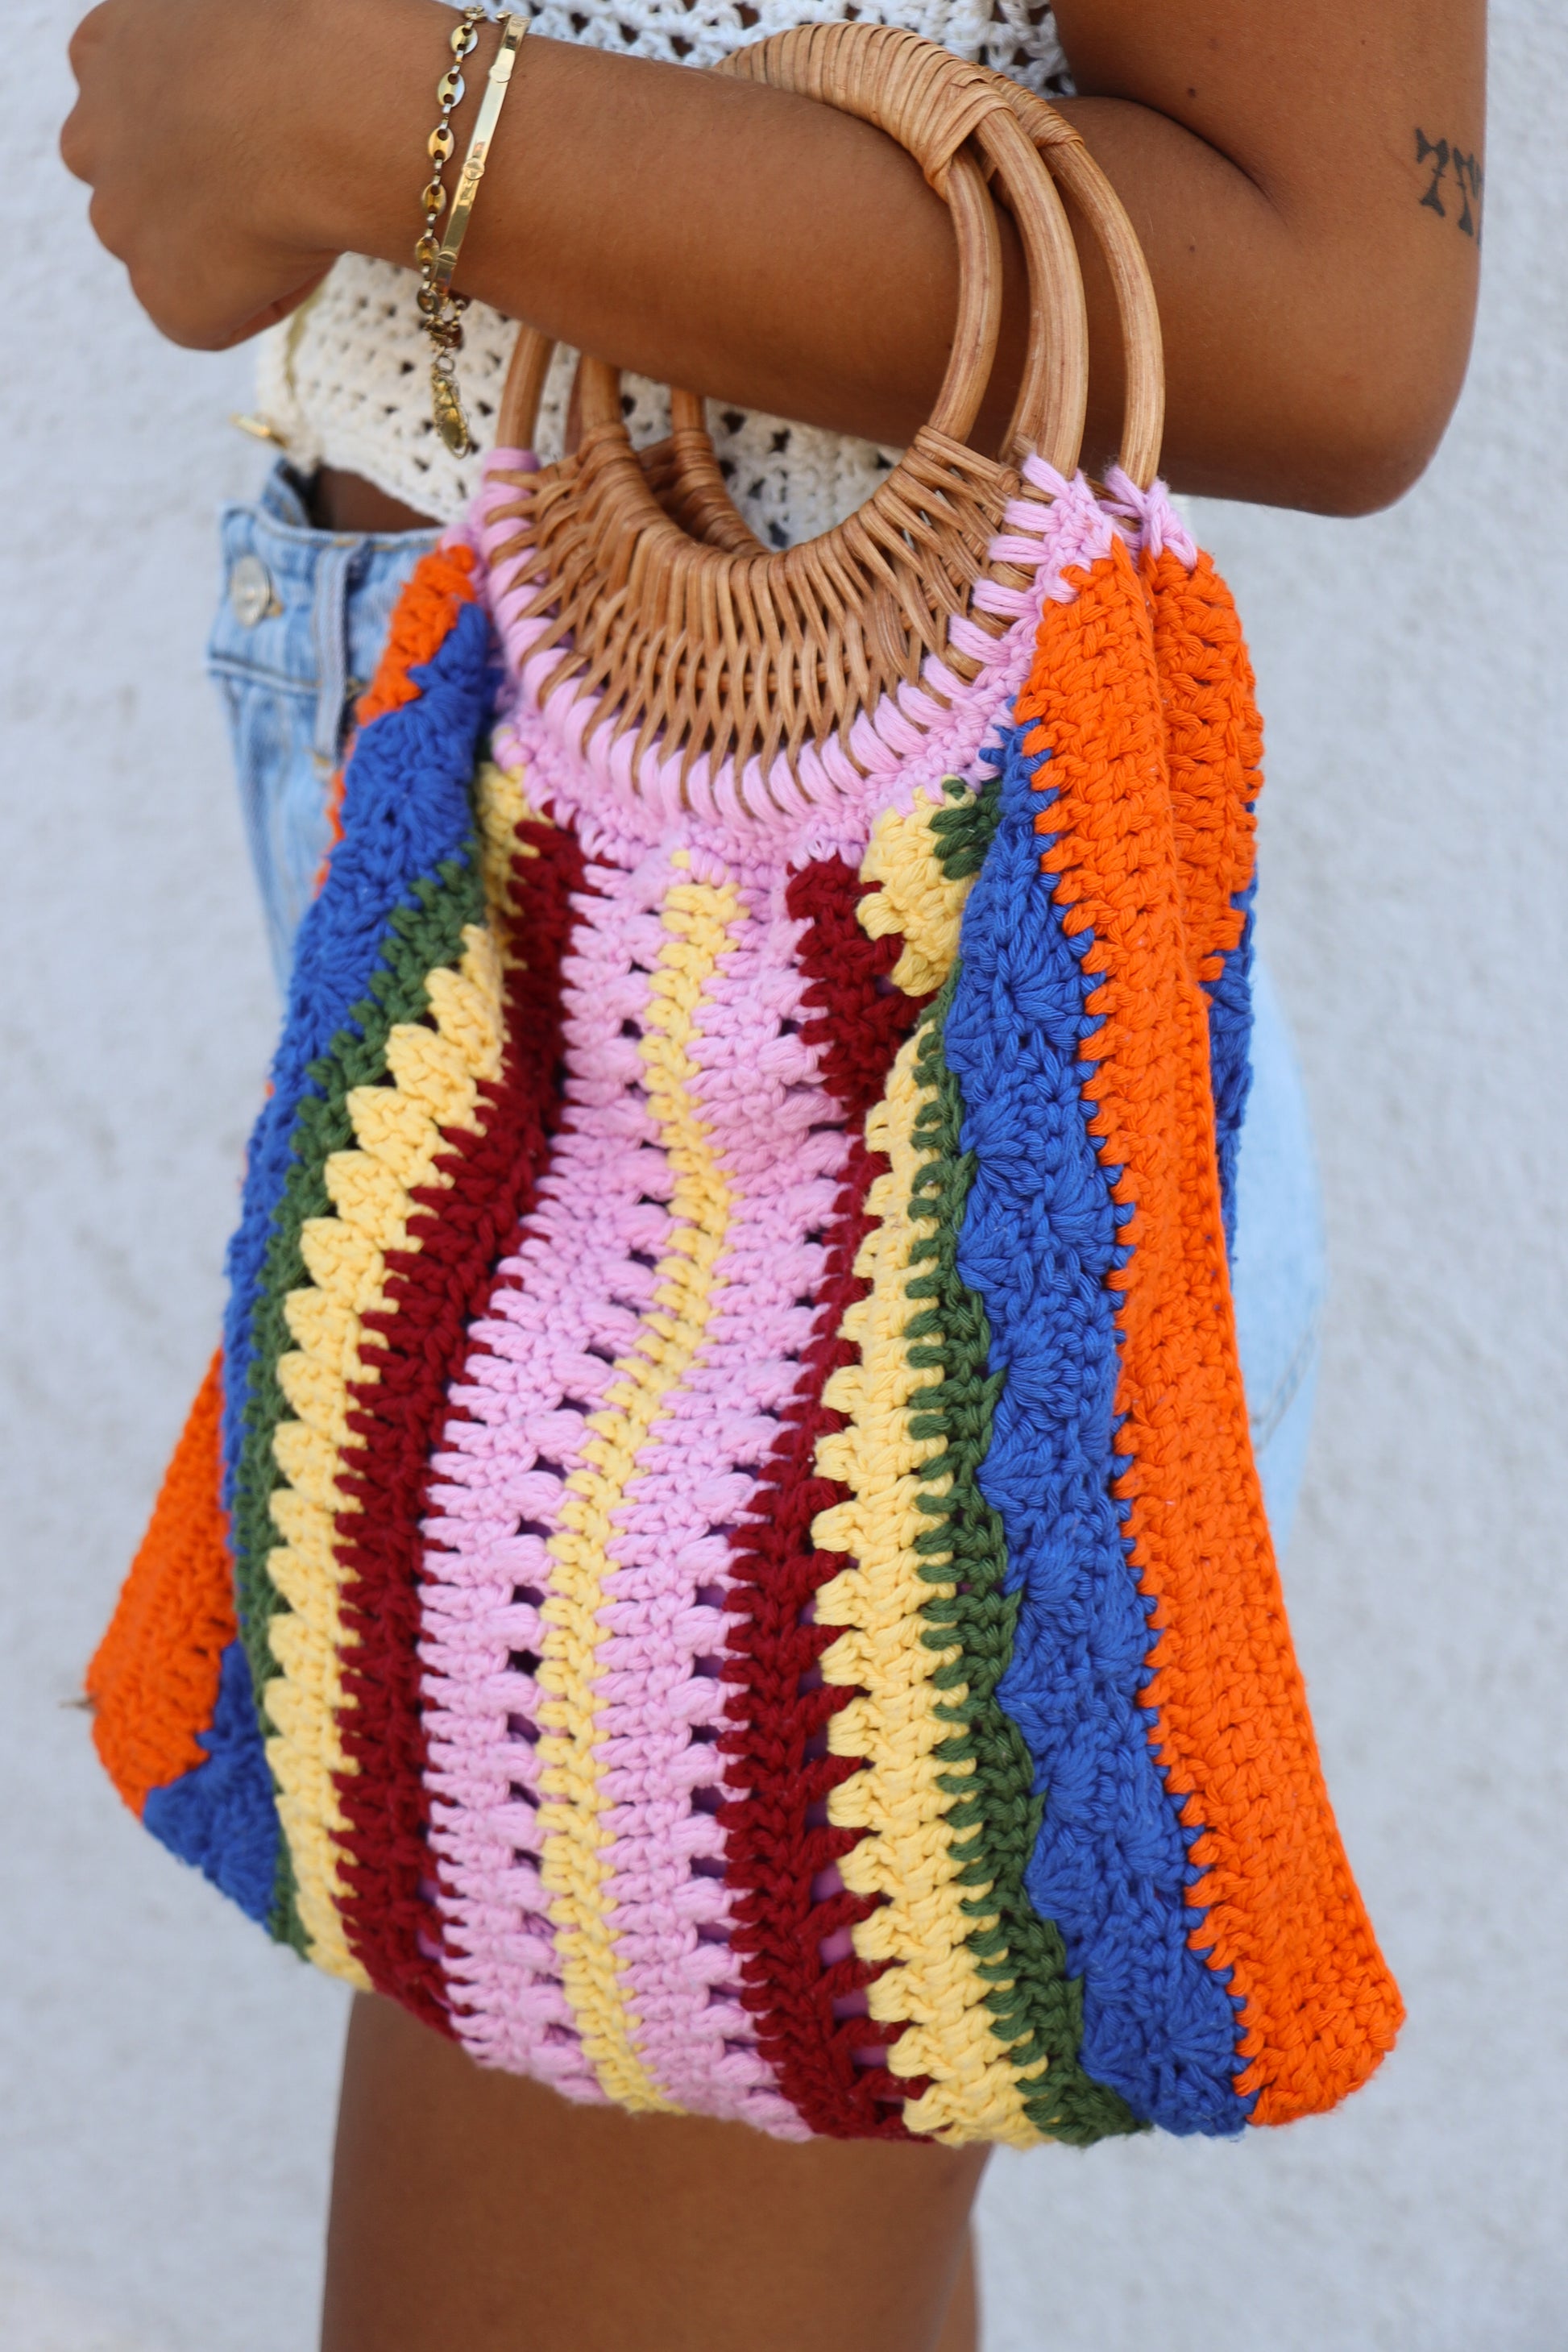 sac au tricotin crocheté - Chez Laramicelle